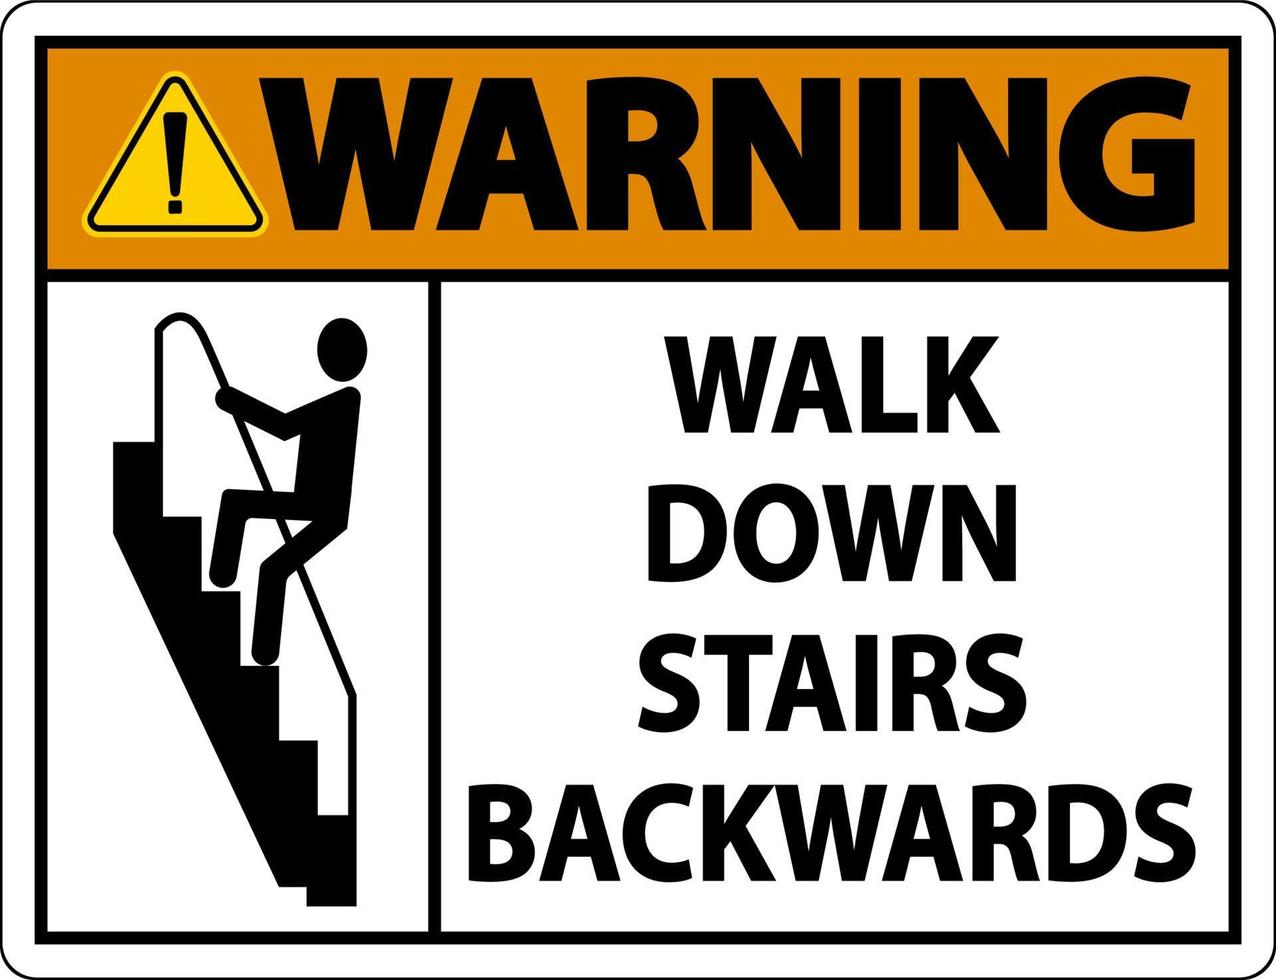 varning gå nerför trappan bakåtskylt vektor